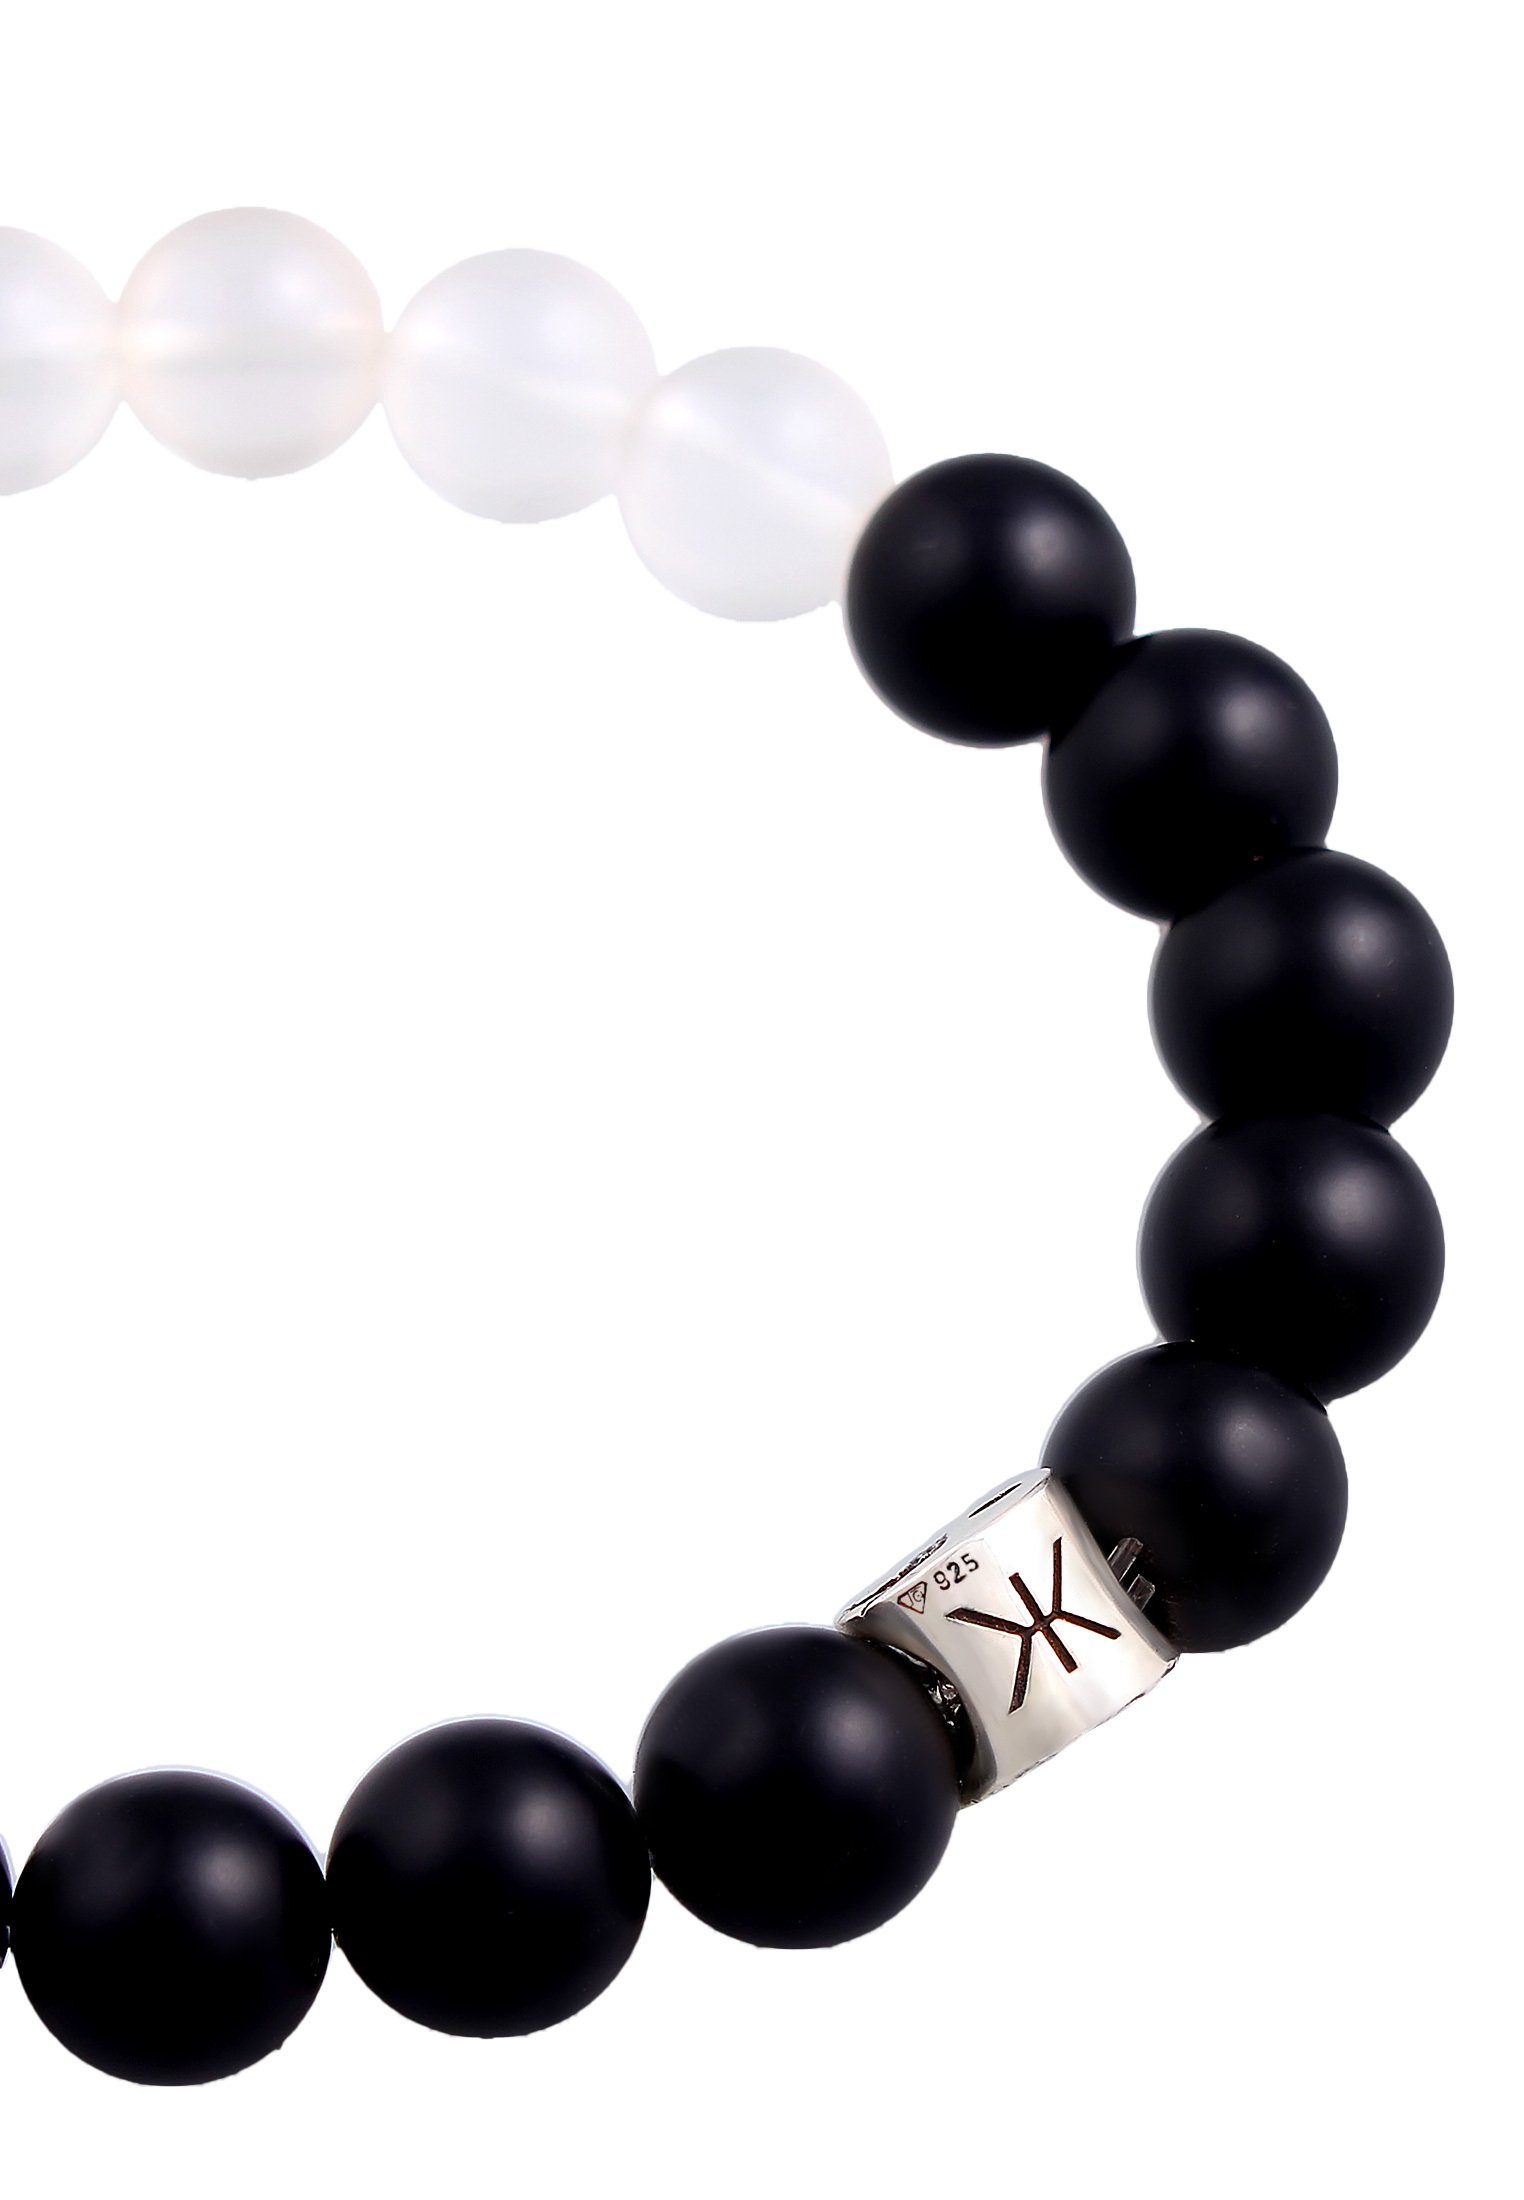 Kuzzoi Armband Yin Yang Bead Silber Kristall Onyx 925 Perlen